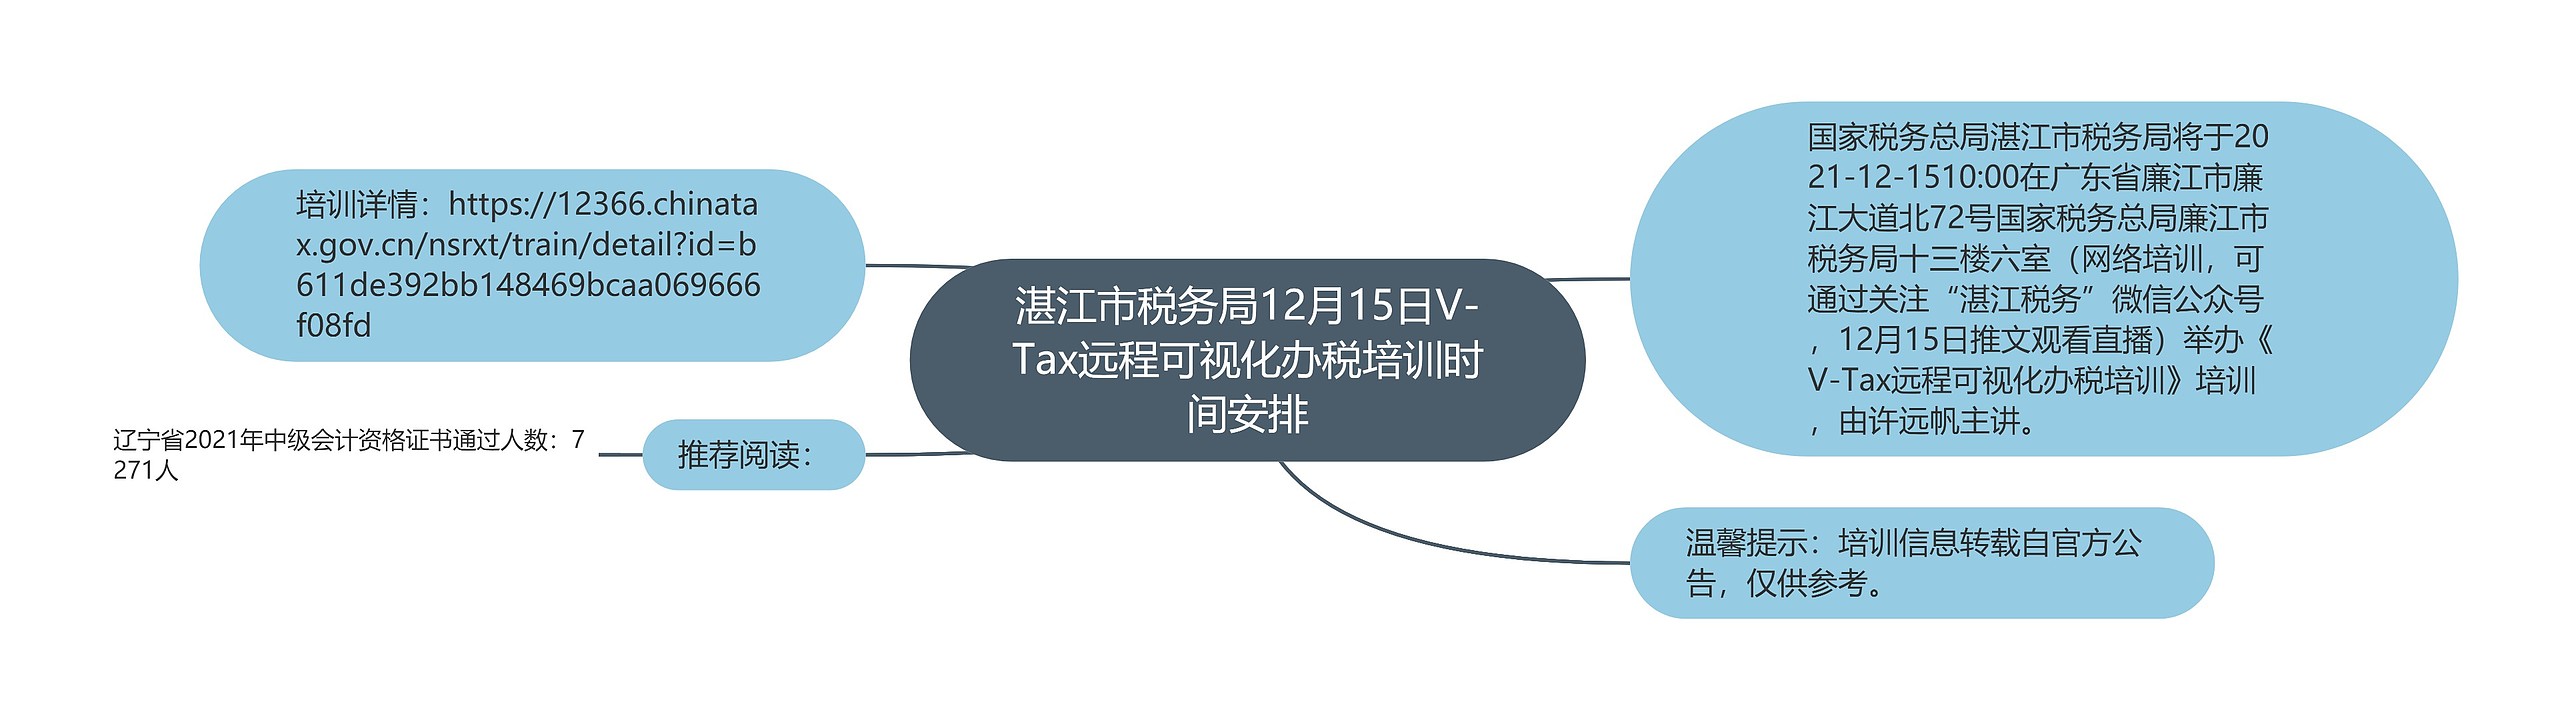 湛江市税务局12月15日V-Tax远程可视化办税培训时间安排